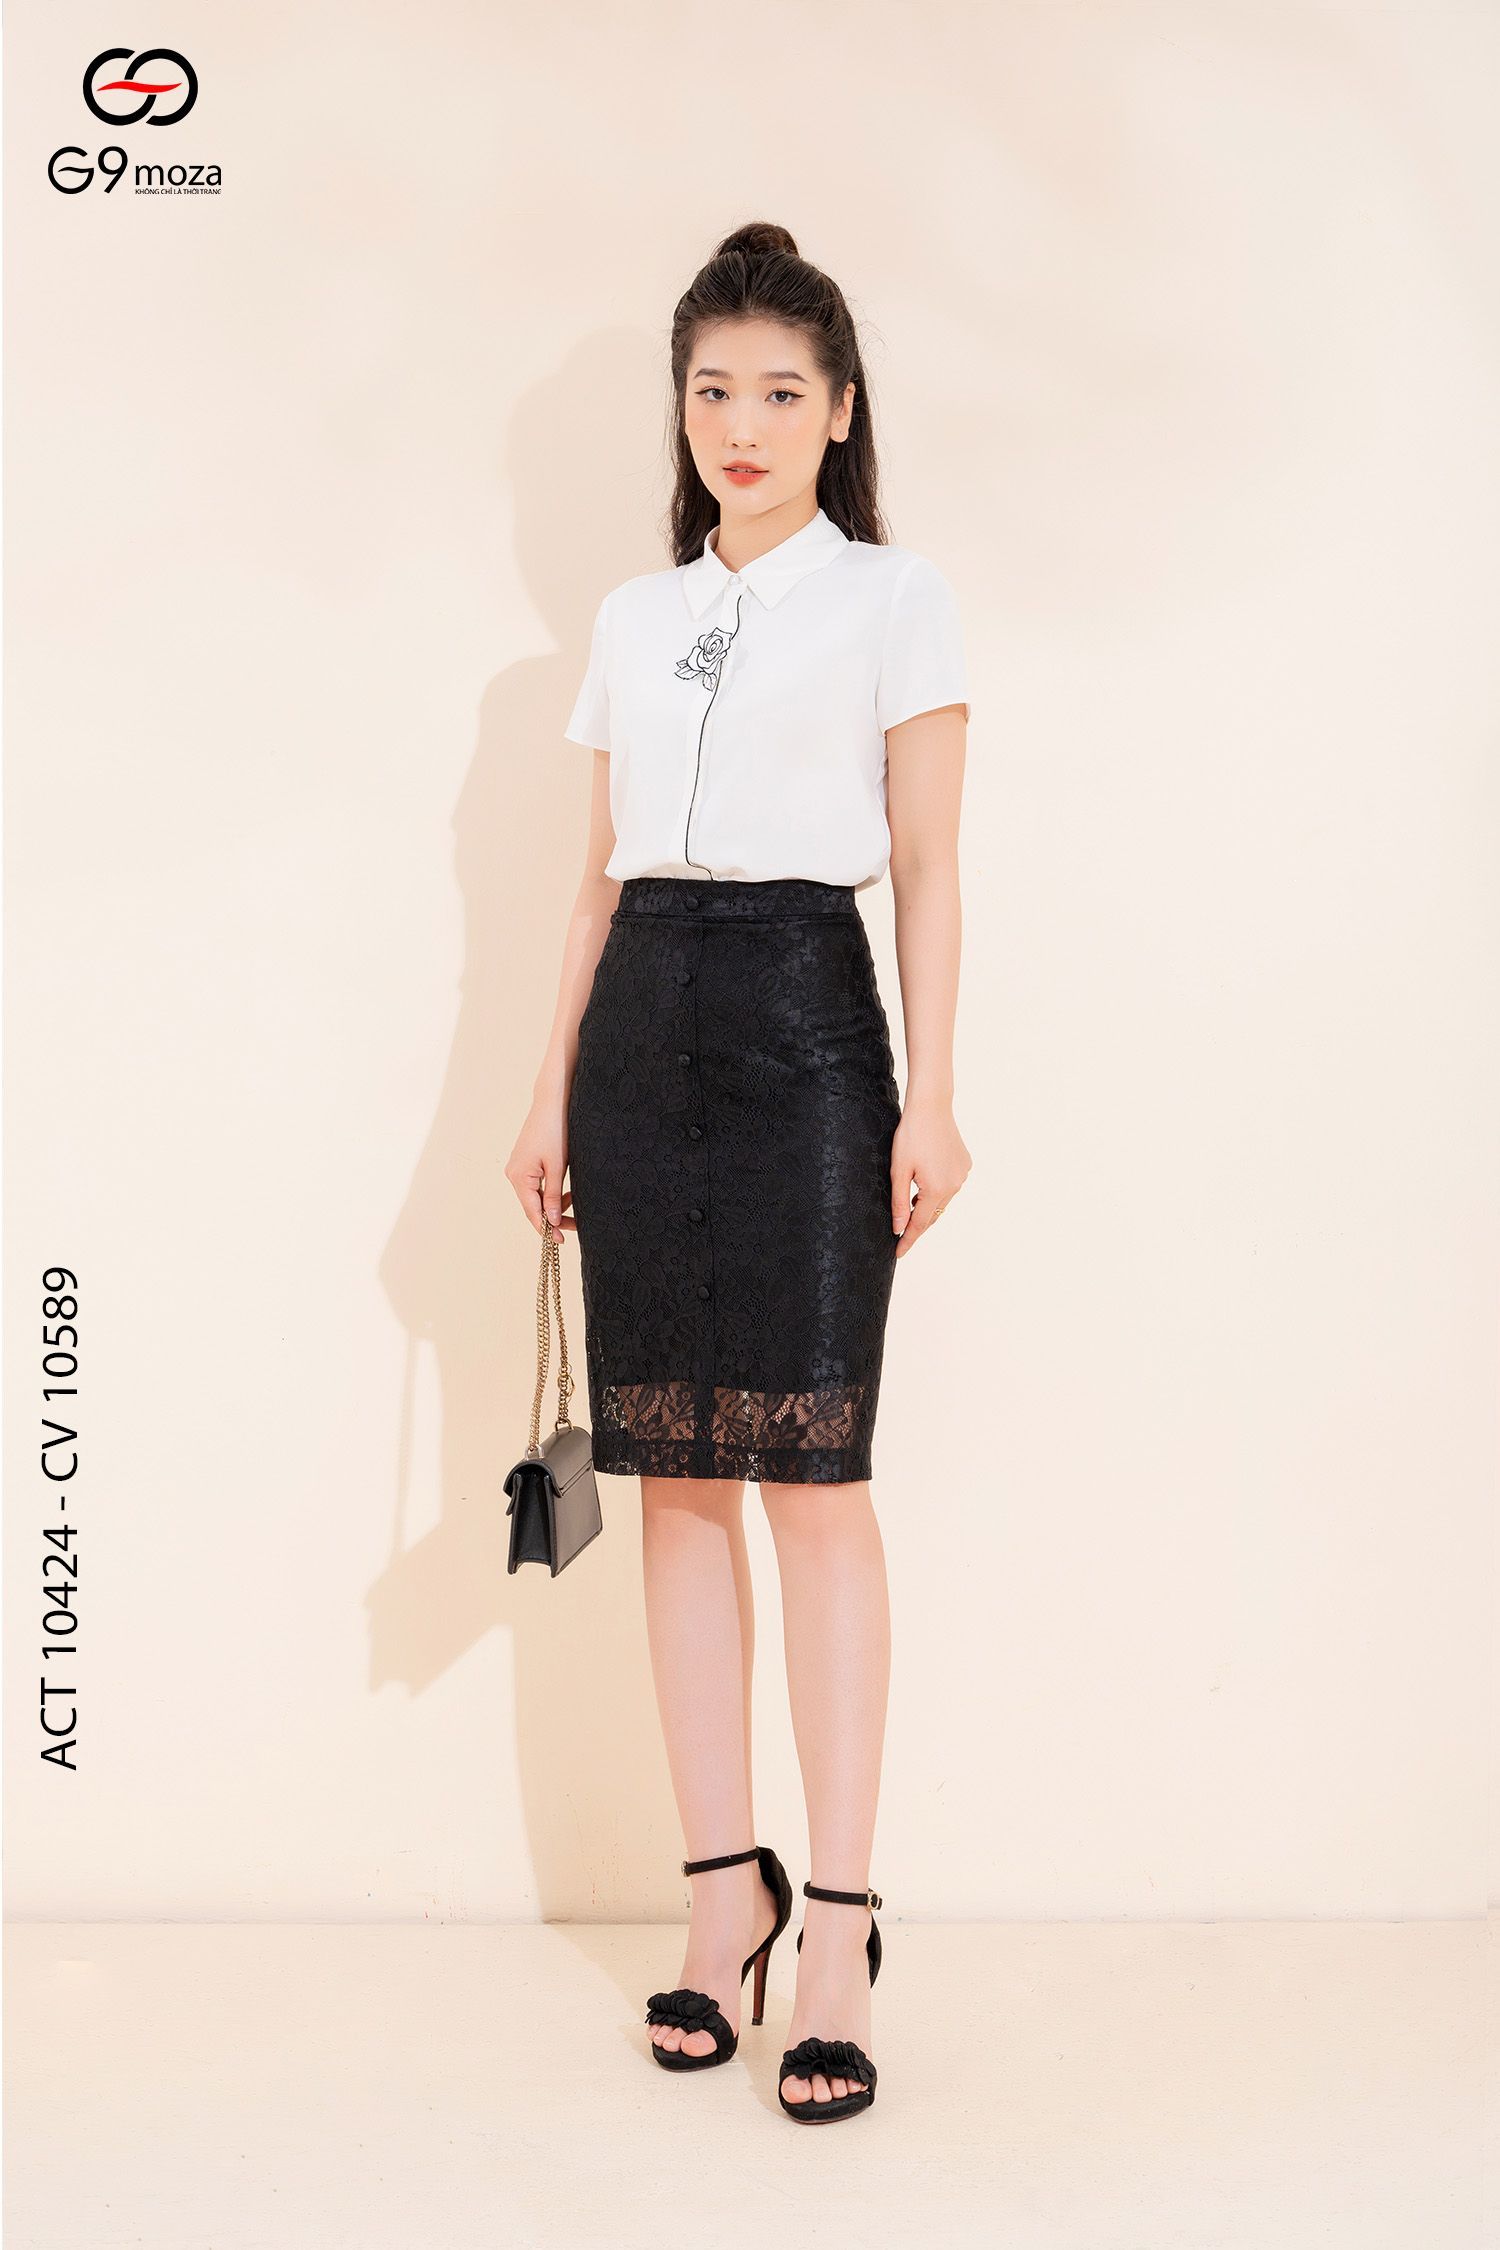 Top 9 Phong cách thời trang cho cô nàng công sở tại Mytour.vn